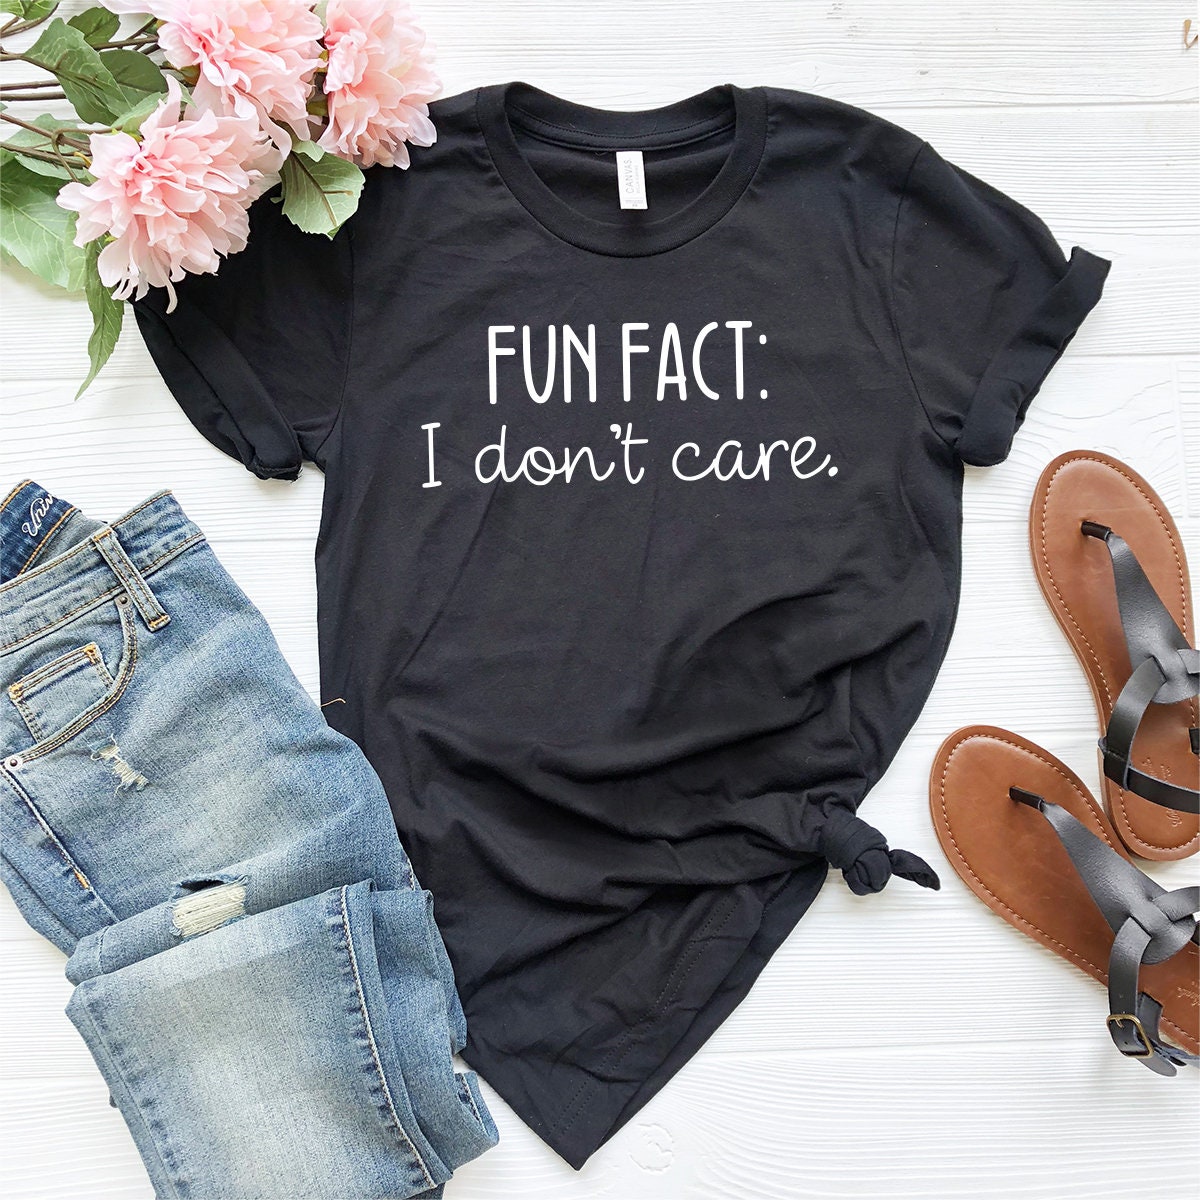 Sarcastic Quotes Shirt, Funny Sarcasm Shirt, Fun Fact I Don’t Care Tee, Funny T-Shirt, Shirt With Saying, Sarcasm Women Tee, Sarcastic Shirt - Fastdeliverytees.com